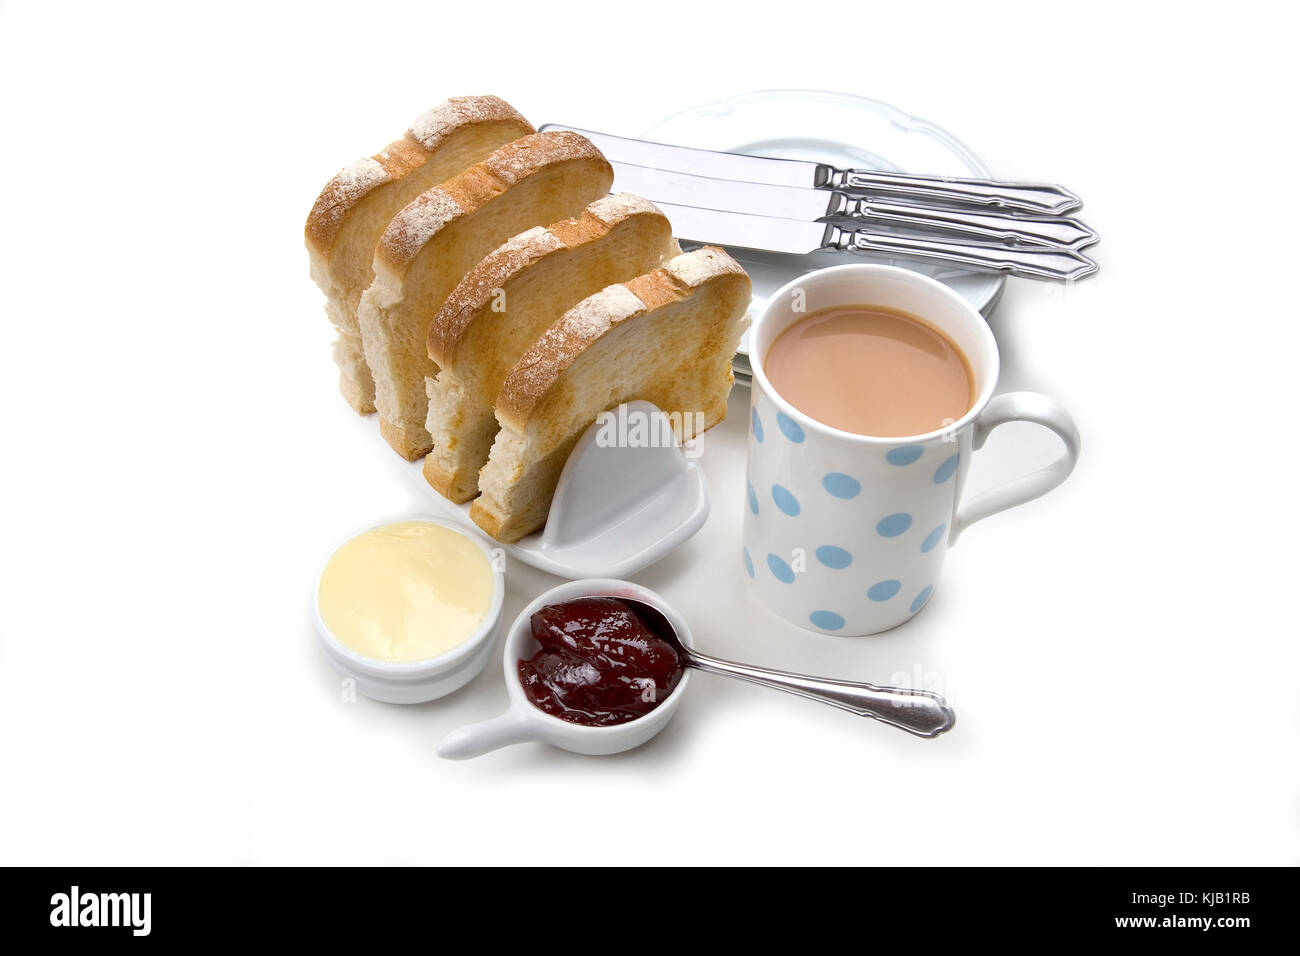 Toast blanc en tranches de pain grillé avec du beurre en rack en céramique rouge, confiture, tasse de thé et les assiettes et les couteaux sur fond blanc. Banque D'Images